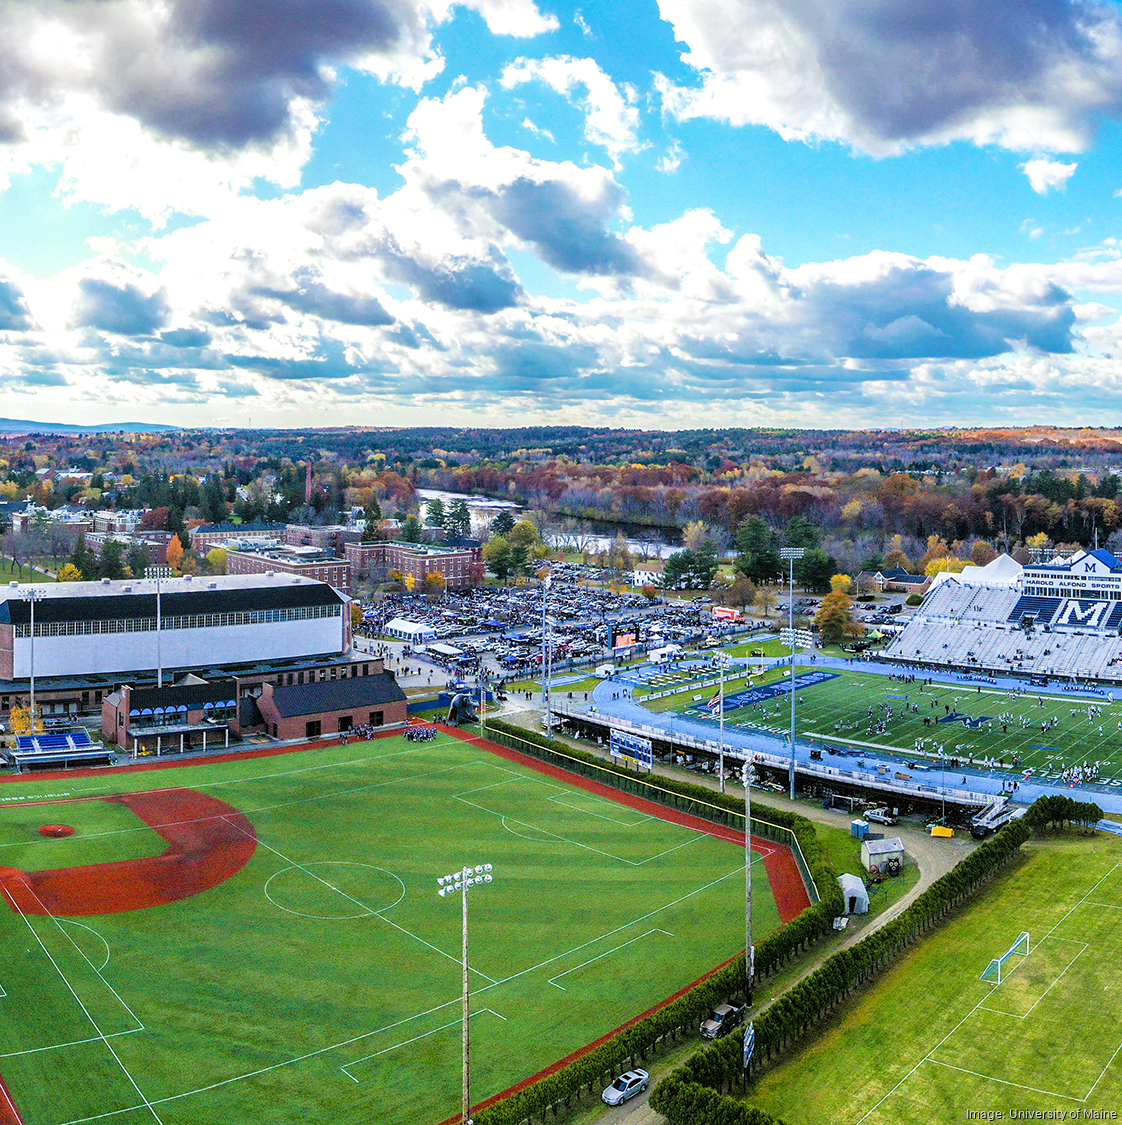 UMaine Softball Facility - University of Maine Athletics